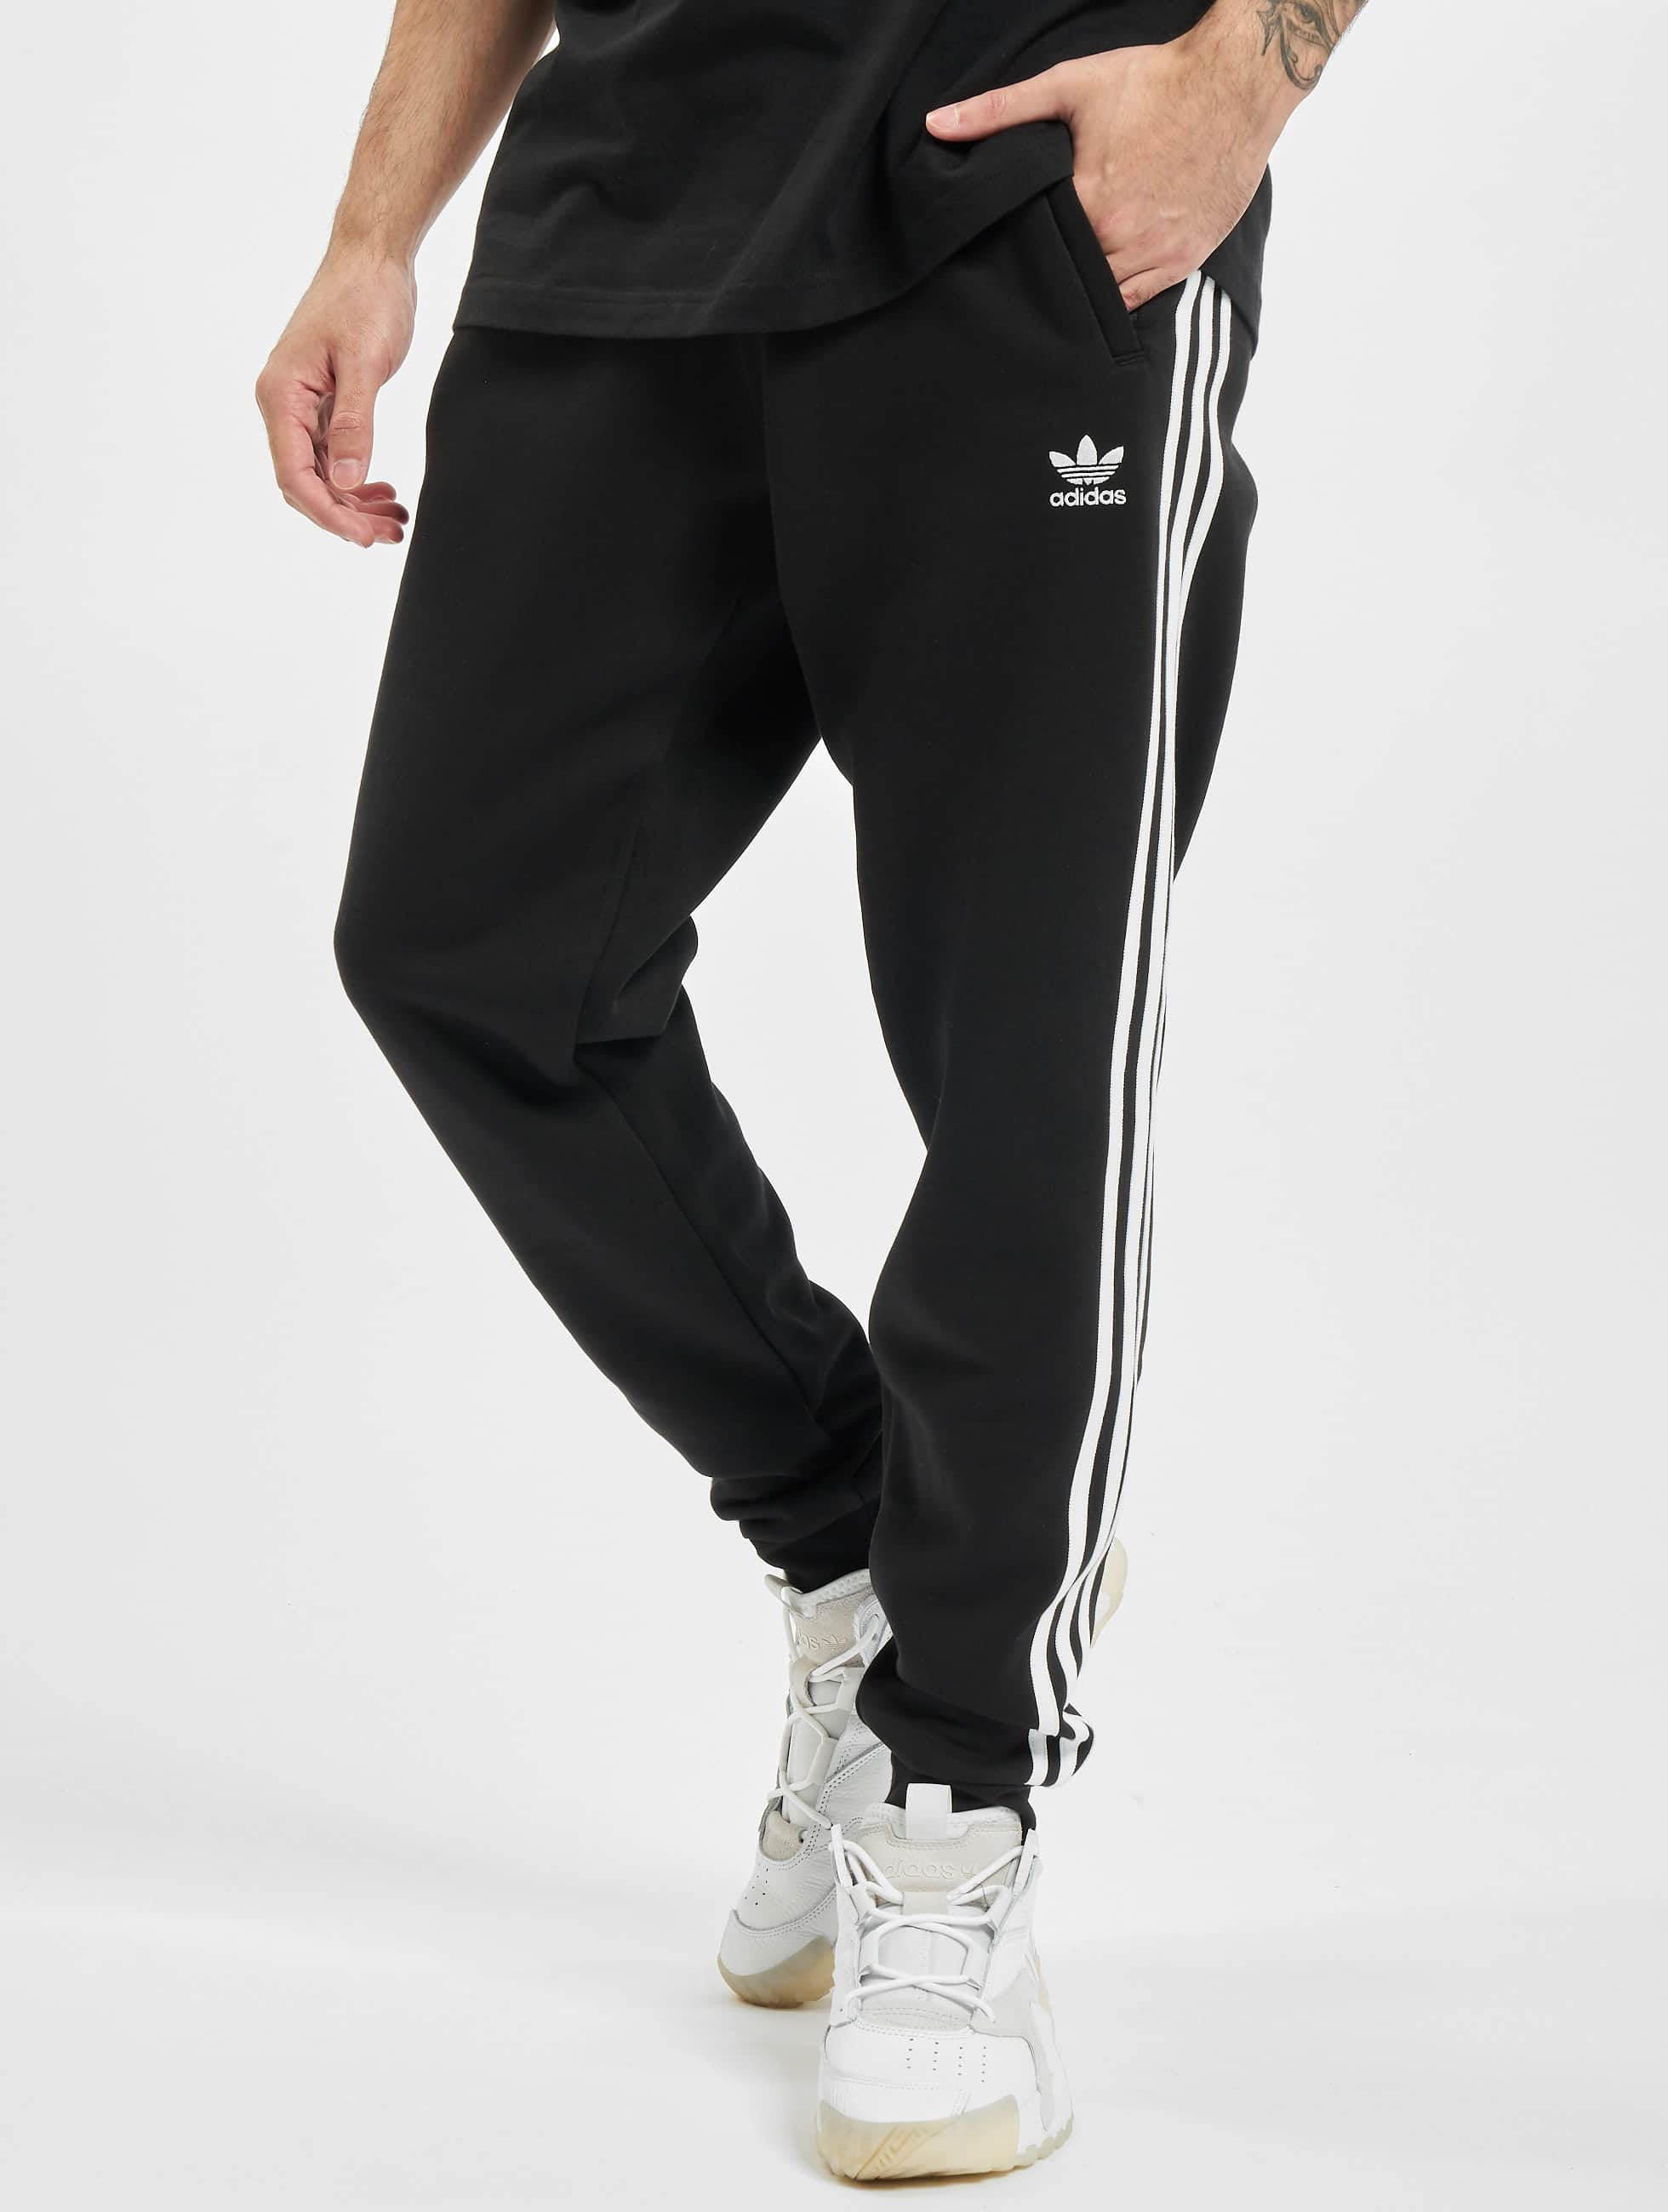 Gepensioneerd dauw Avondeten adidas Originals broek / joggingbroek 3-Stripes in zwart 801759